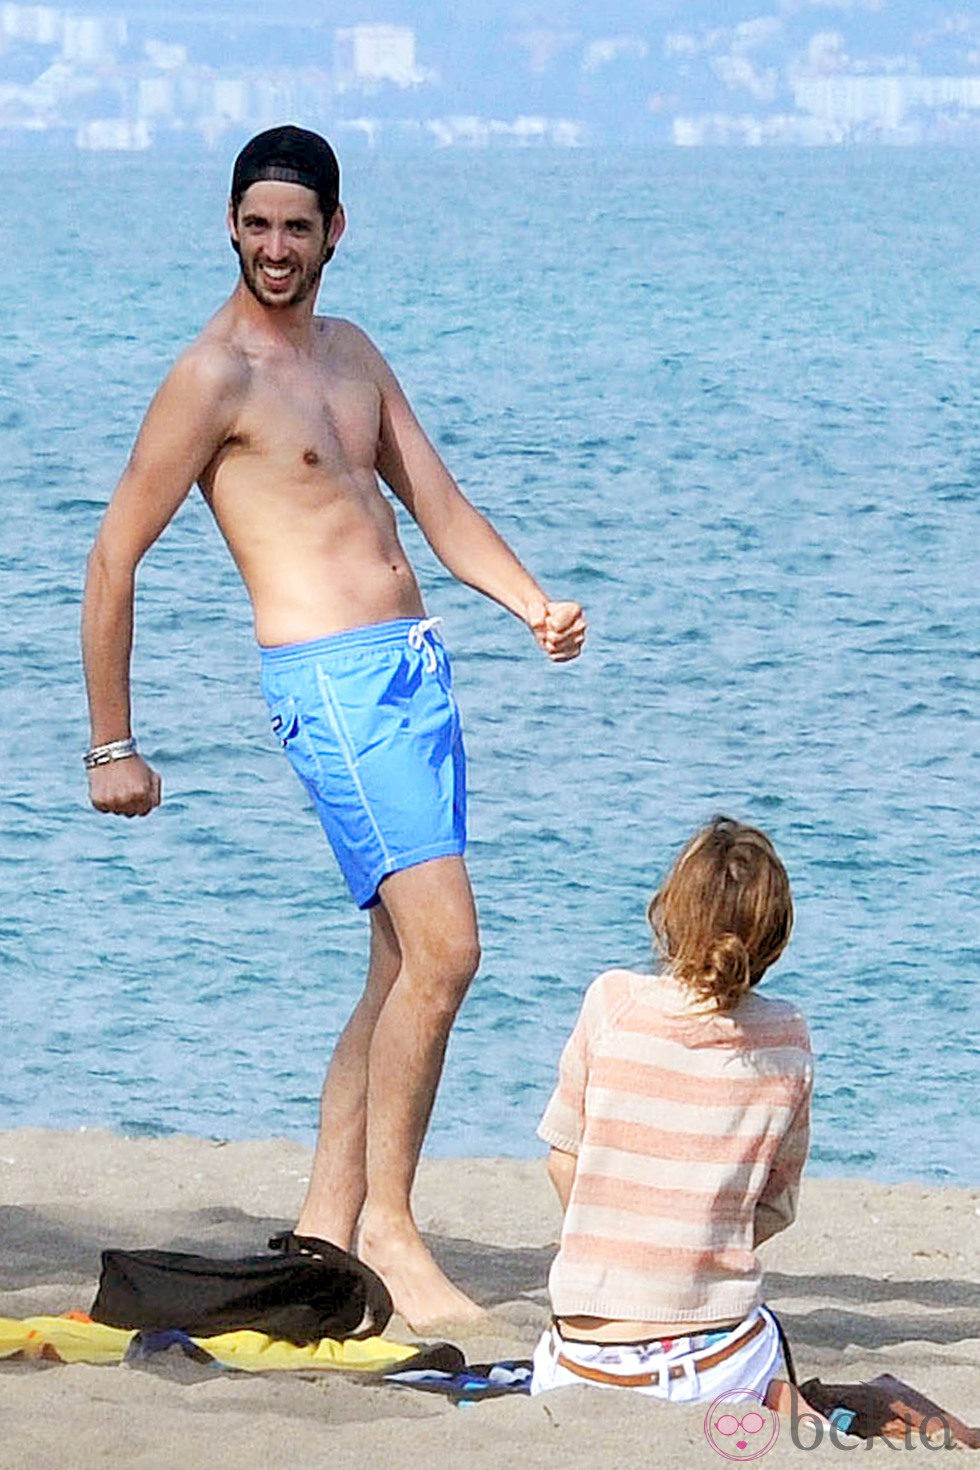 Santiago Trancho bromea junto a Ana Fernández en las playas de Málaga